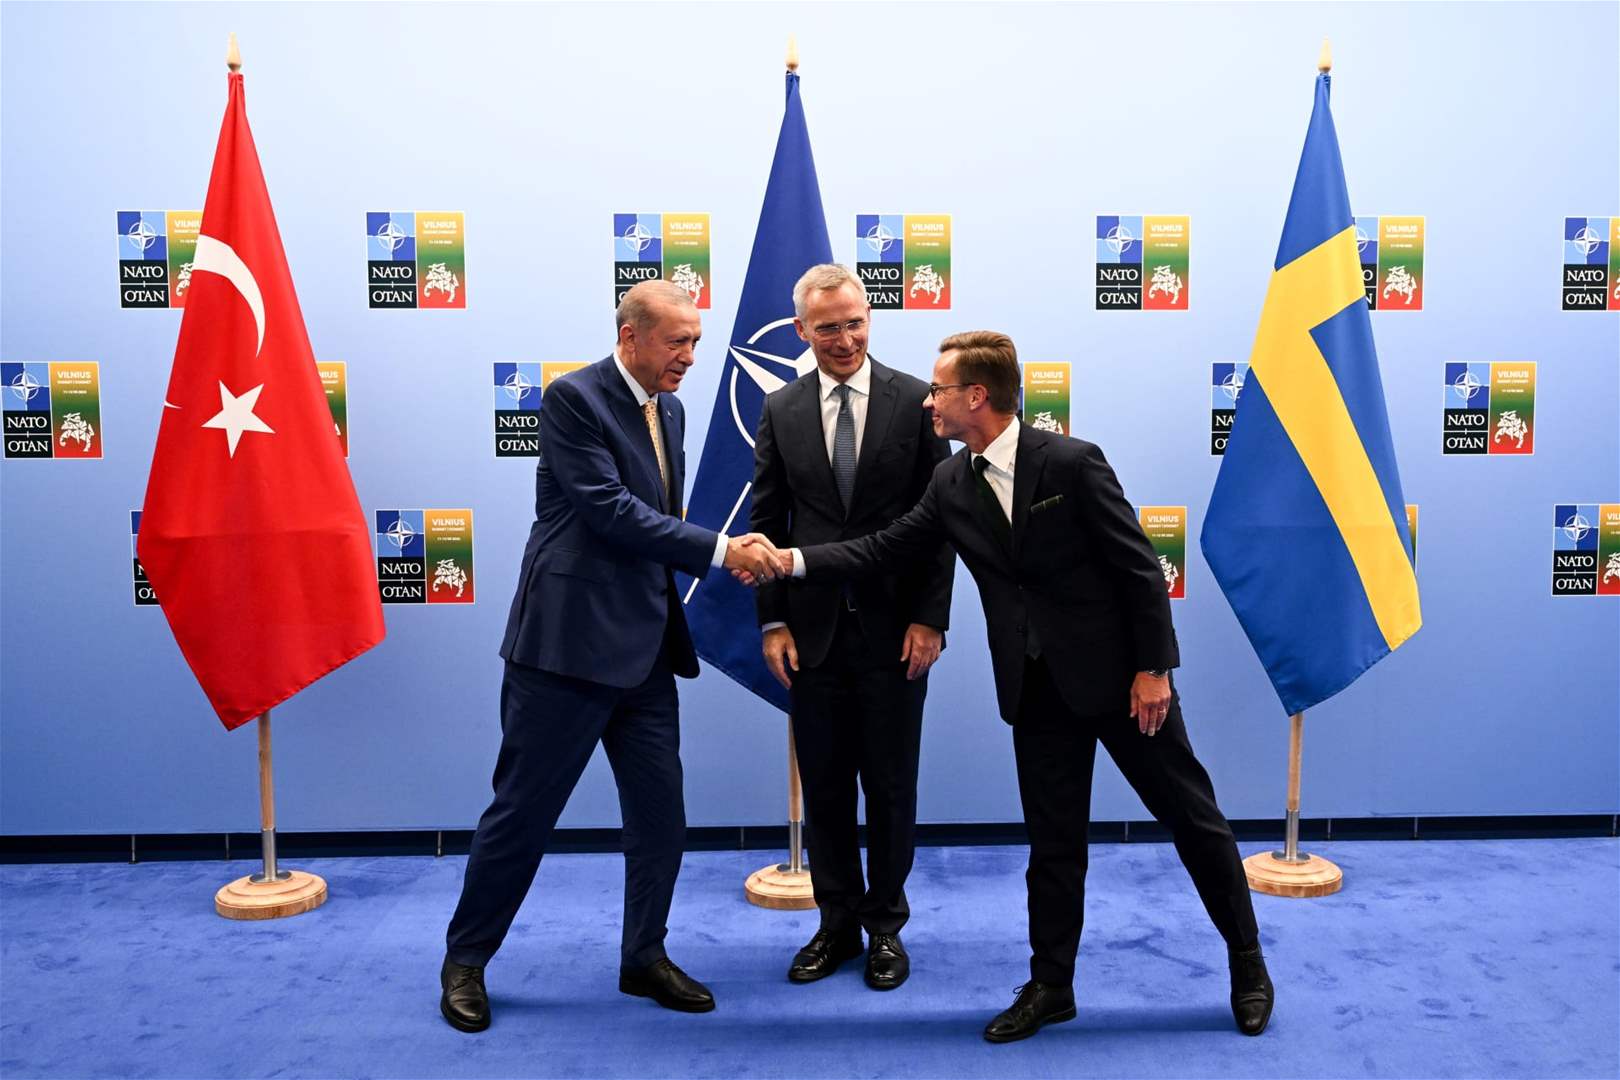 البرلمان المجري يصادق على طلب السويد الانضمام إلى الناتو 